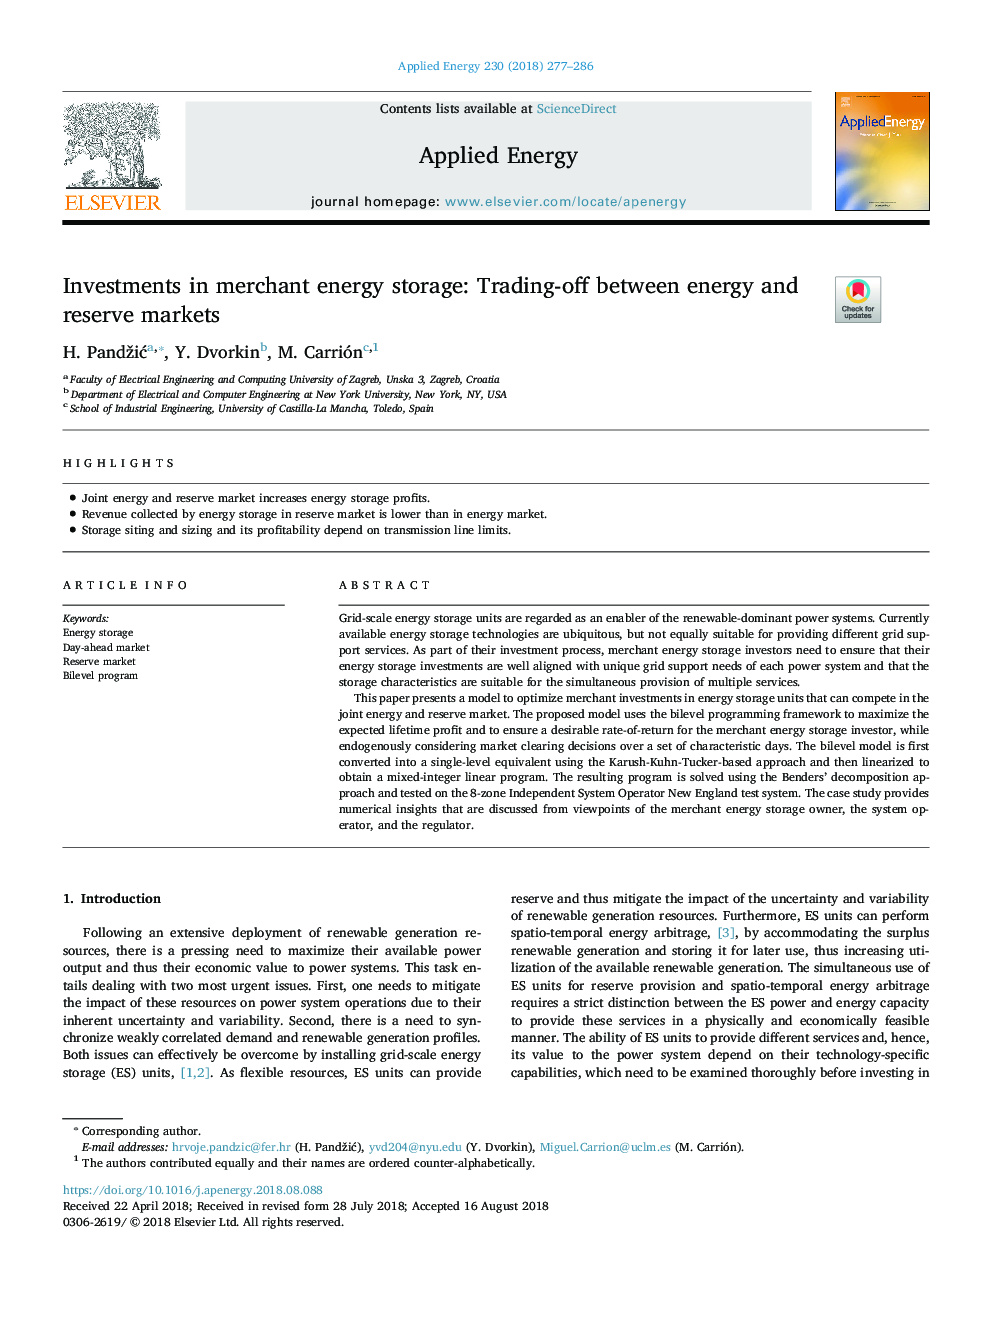 سرمایه گذاری در ذخیره سازی انرژی تجاری: بازرگانی بین انرژی و بازارهای ذخیره